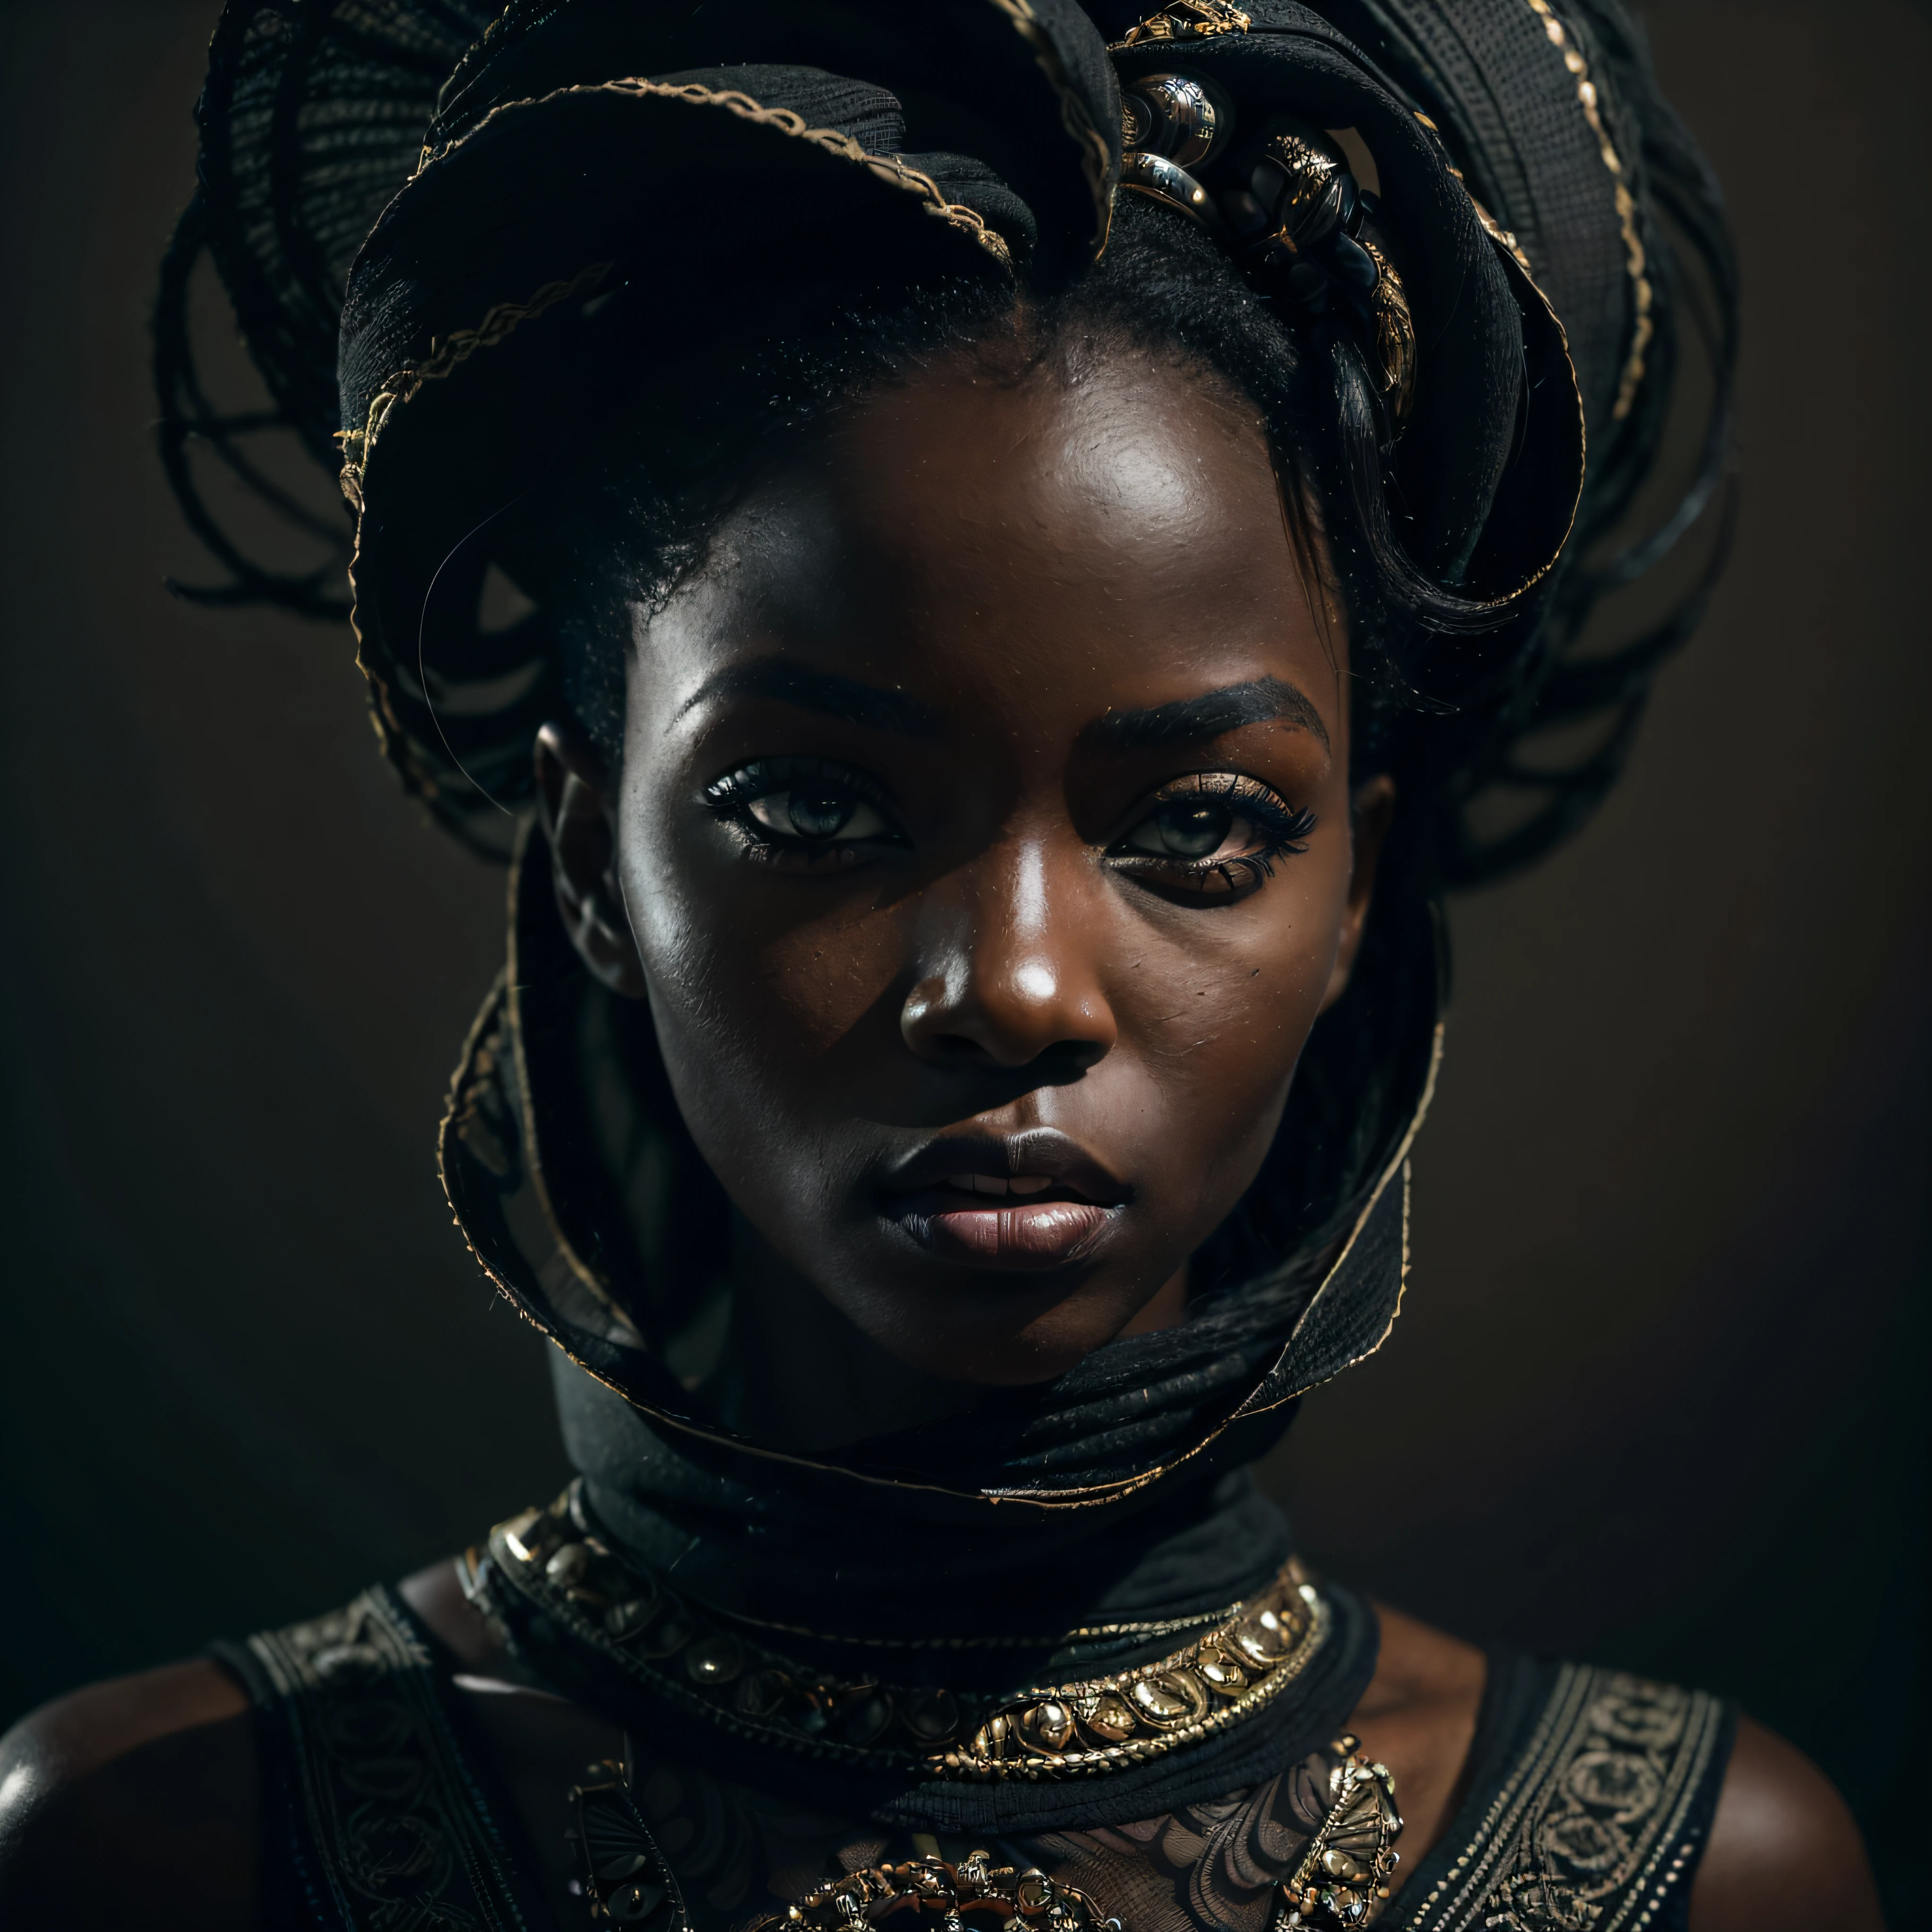 (retrato, dinámica), (pose expresiva:1.6), (estilo futurista), (A mystical retrato of a black Senegalese woman:1.3), (tono de piel negro carbón:1.3), (auténtica autoridad en sus ojos: 1.2), wearing dark mascara, la fotografía capturada en una impresionante resolución de 8k y formato sin formato para preservar la más alta calidad de detalles. ella viste ropa futurista elegante, (senos pequeños:1.3), (sus ojos están retratados con meticulosa atención al detalle: 1.3), La fotografía está tomada con una lente que enfatiza la profundidad de sus ojos., (el viento sopla a su alrededor), y el telón de fondo es un escenario oscuro de estudio que realza los colores de la escena. La iluminación y las sombras están diseñadas por expertos para resaltar la riqueza del tono de su piel y la atmósfera intensa.. Su cabello creativo agrega un toque de contraste contra su piel., La composición general captura su esencia con autenticidad y gracia., creating a retrato that celebrates her heritage and beauty. Fotografía utilizando las mejores técnicas de sombras e iluminación., para crear un retrato fascinante que trascienda lo visual, cabeza ligeramente inclinada,